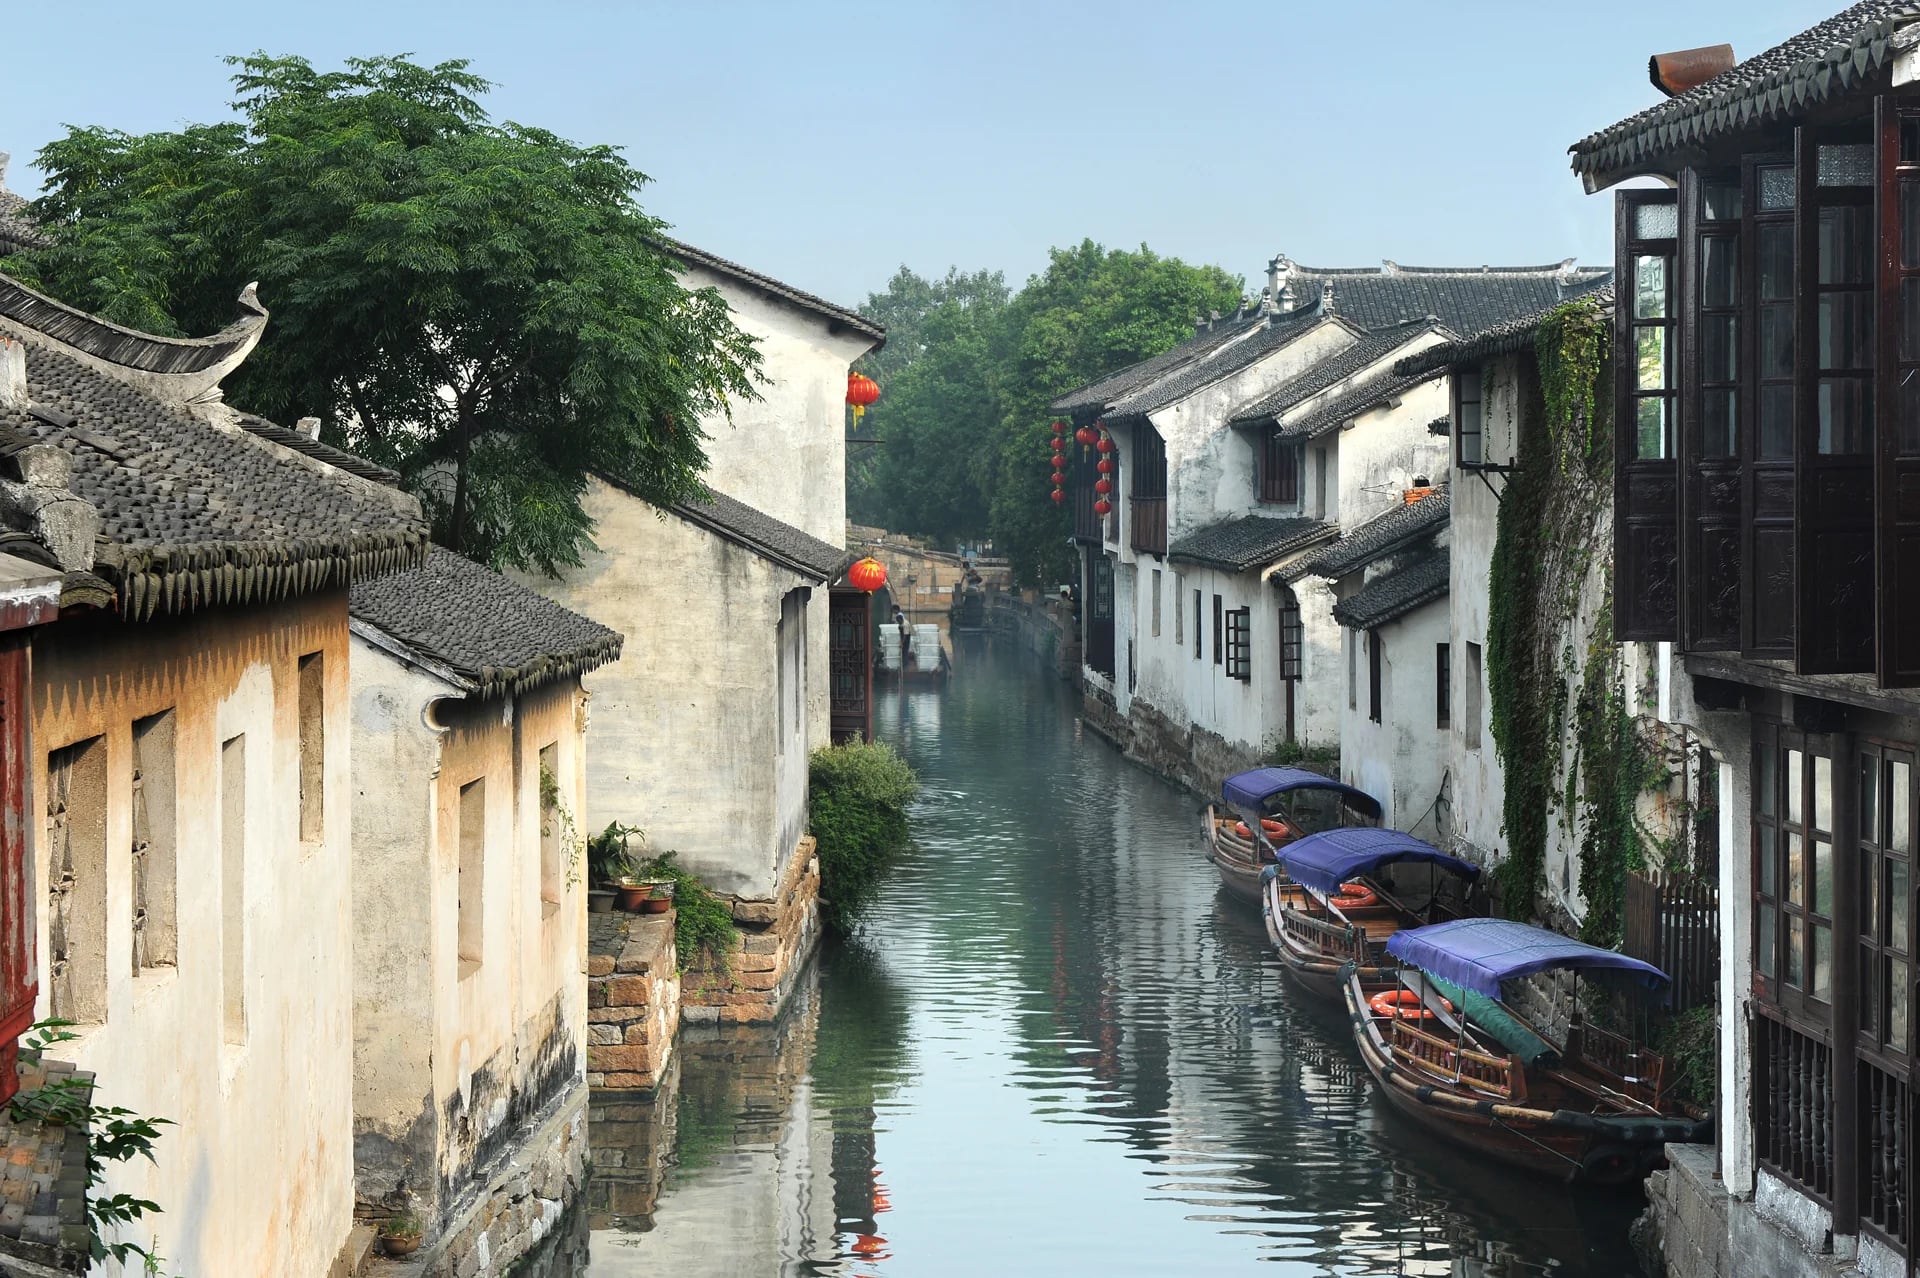 Tongli es famoso por sus calles de agua, se ubica cerca de la ciudad de Suzhou en China. La ciudad está increiblemente preservada, tiene templos y casas de la época de la dinastía Ming y Qing. Para conocer la ciudad y explorarla, se puede hacer mediante los canales y puentes (Istock)